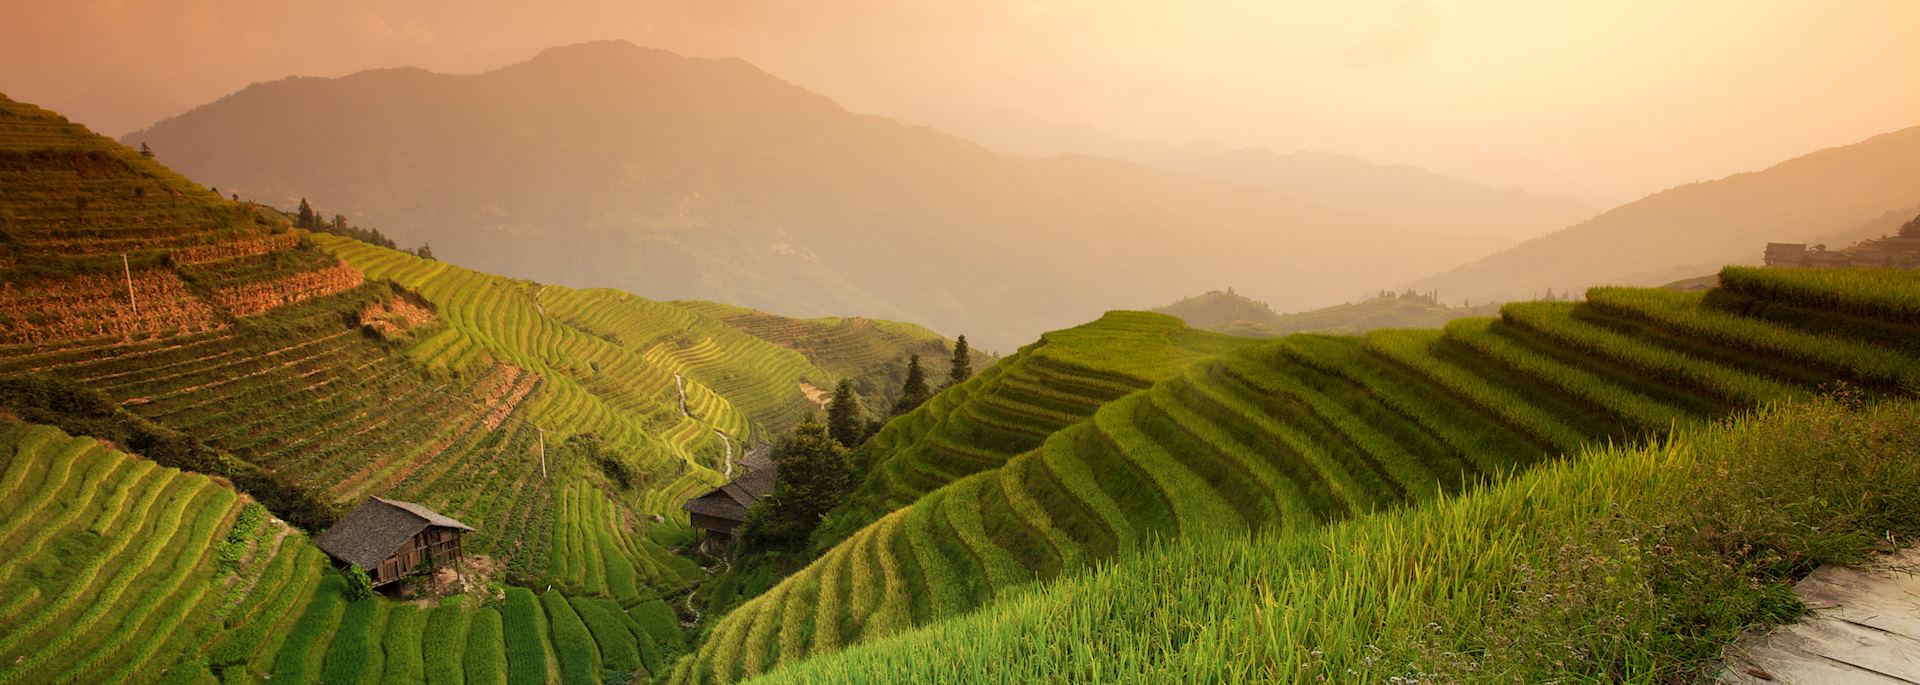 Rice terraces in Longji